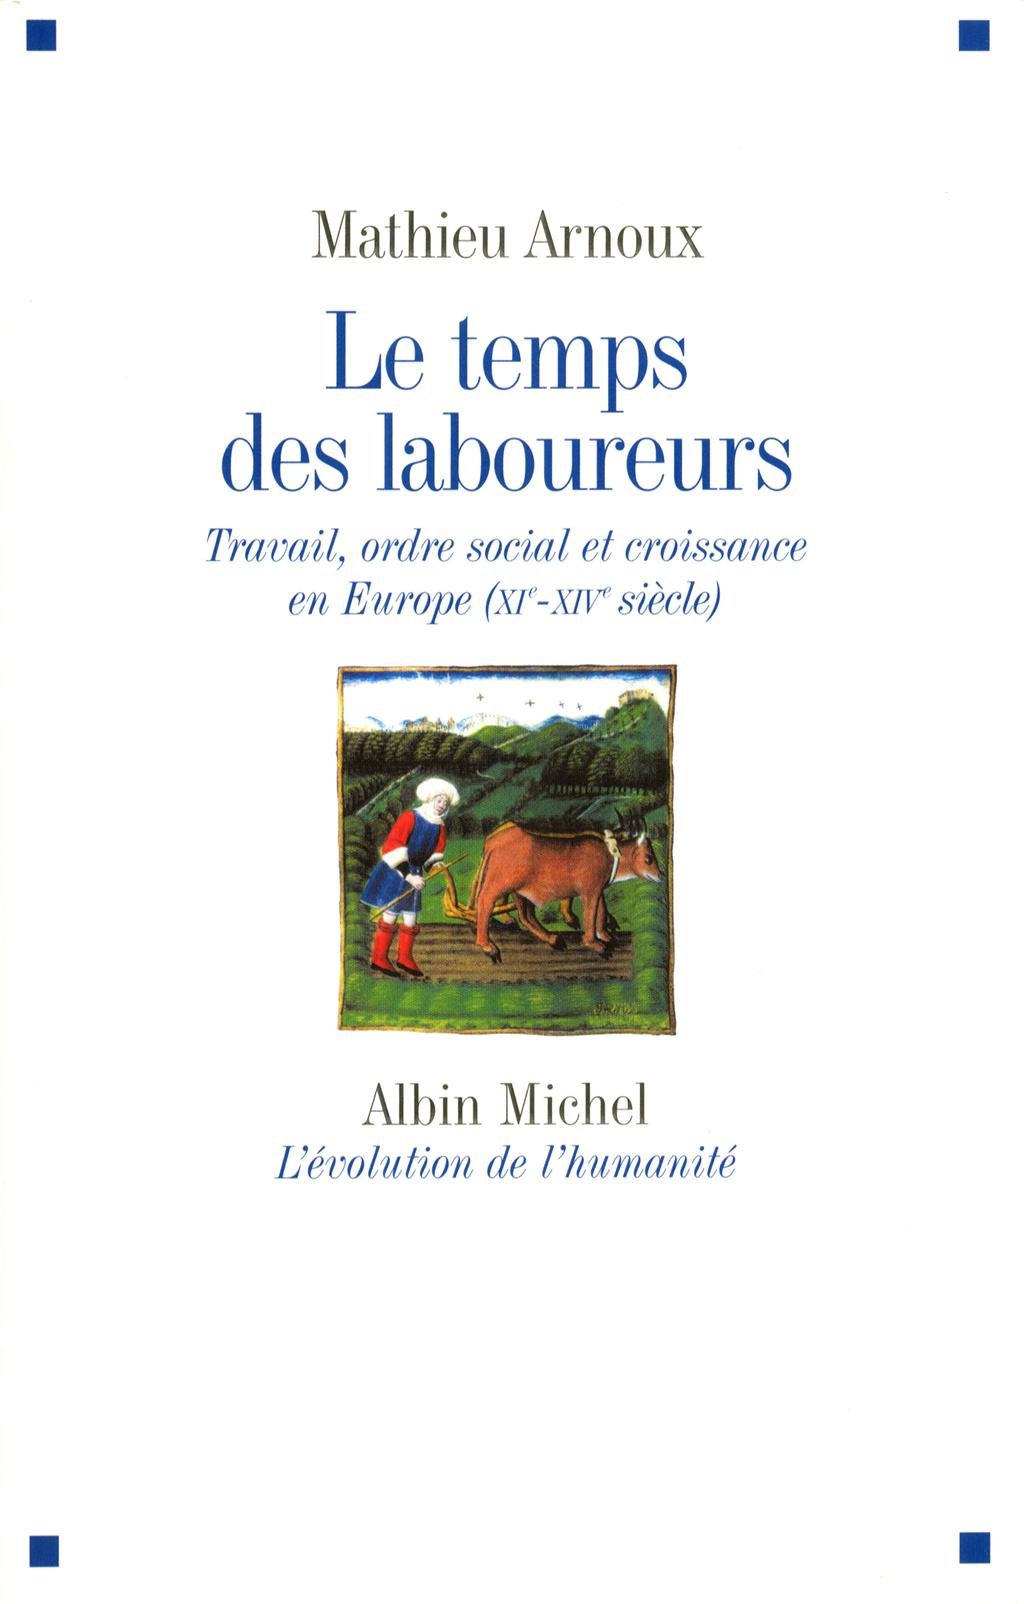 Le temps des laboureurs. Travail, ordre social et croissance en Europe (XIe-XIVe siècle), 2013, 374 p.